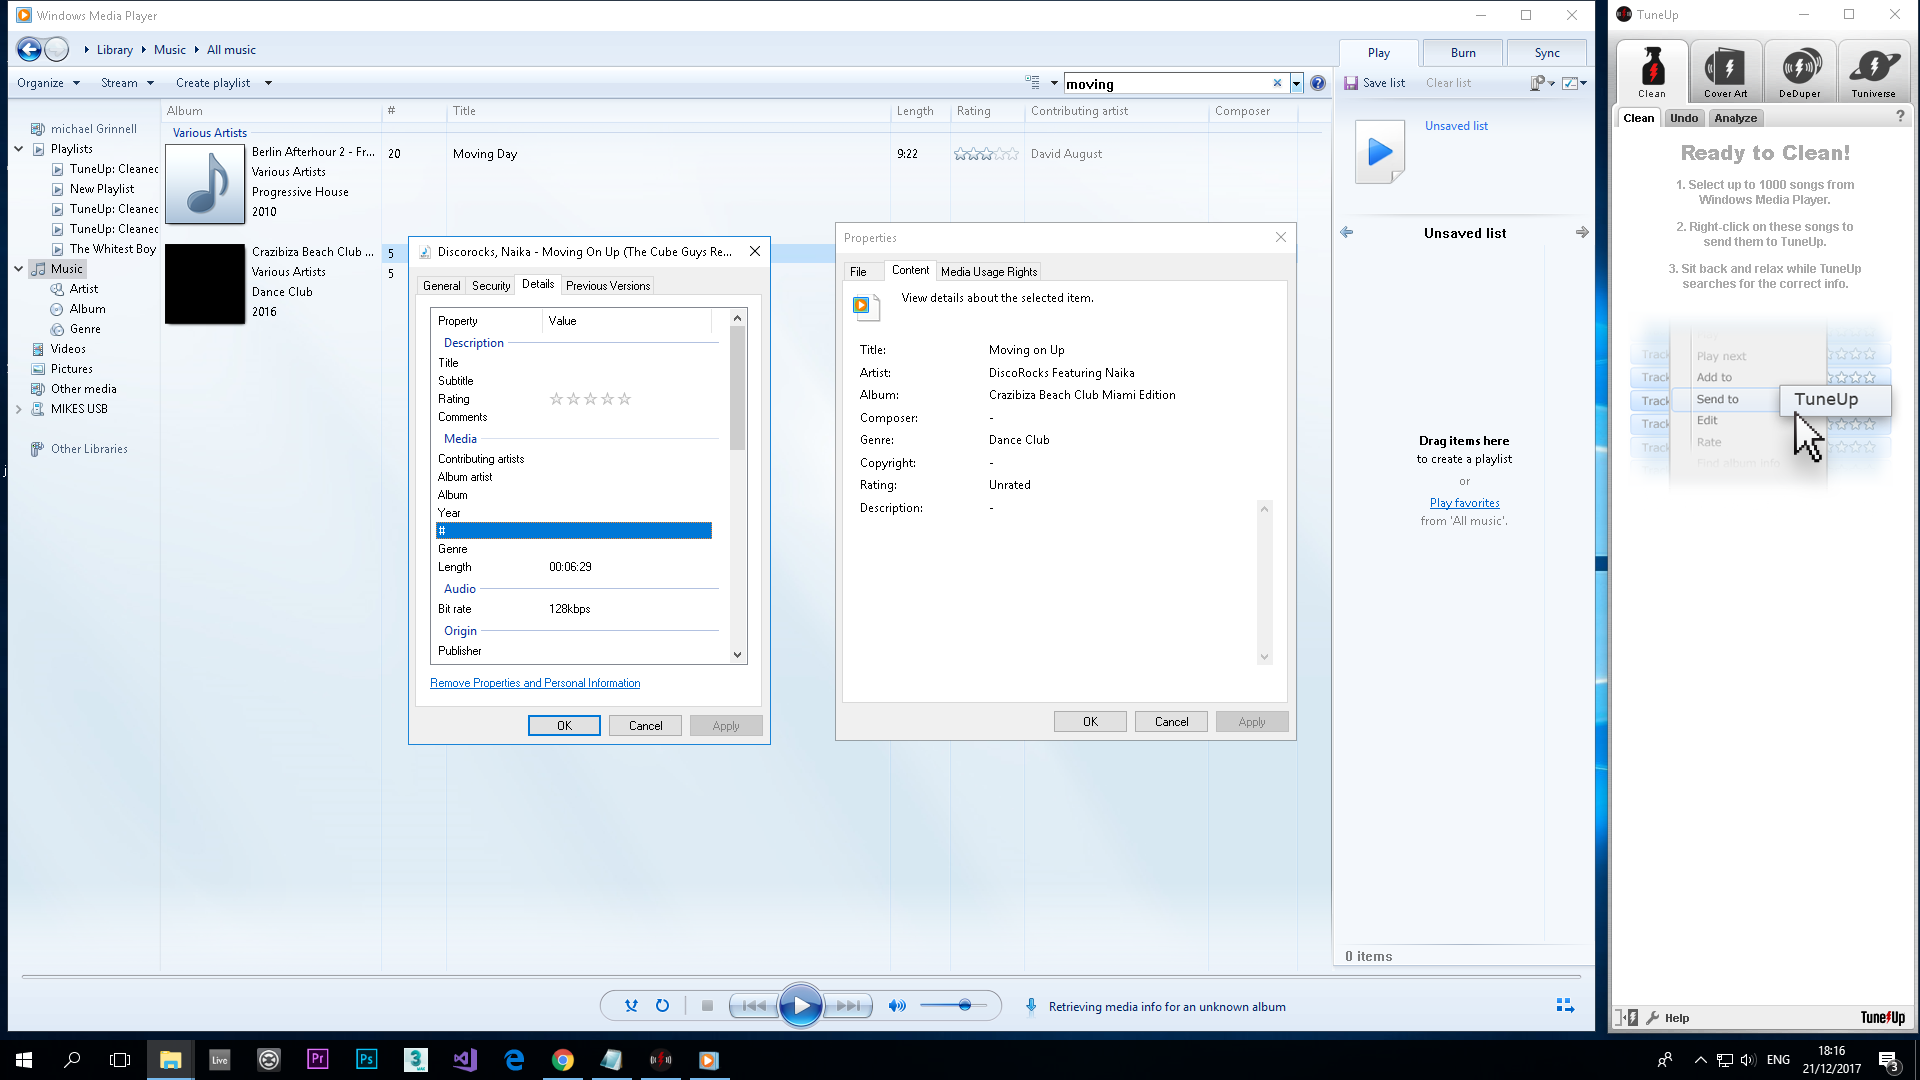 edit track info in Windows Storage Player